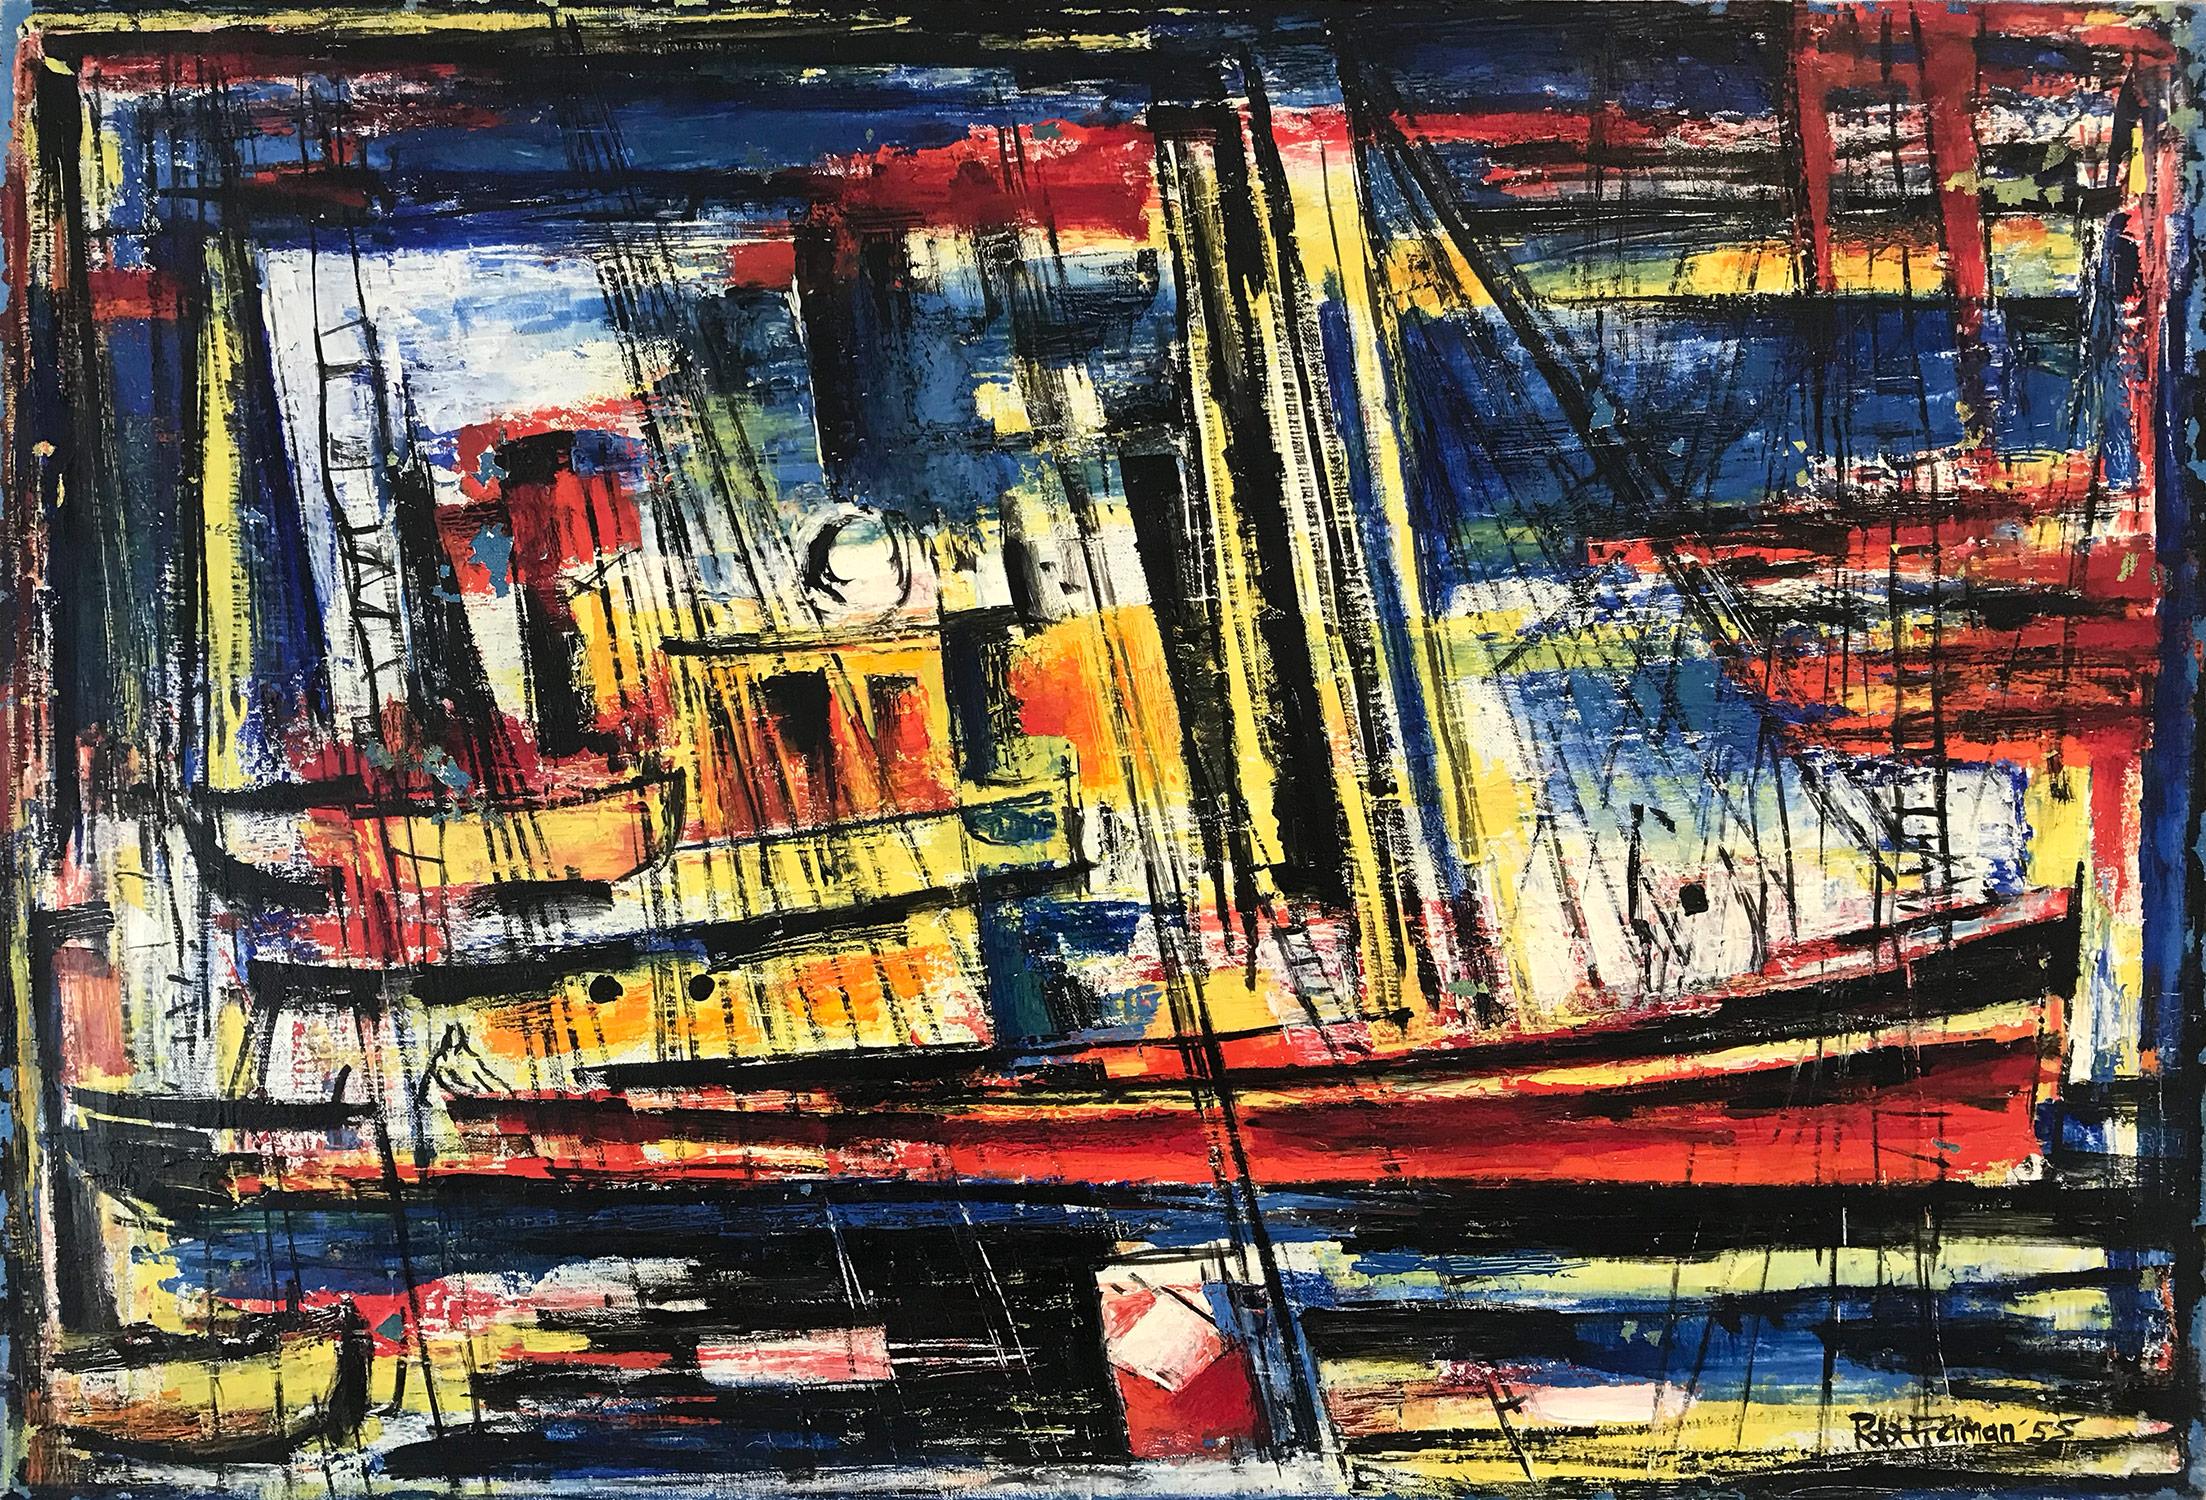 Robert Freiman Abstract Painting – "The Freighter" Mid Century Ölgemälde auf Leinwand Abstrakte Marina mit Booten